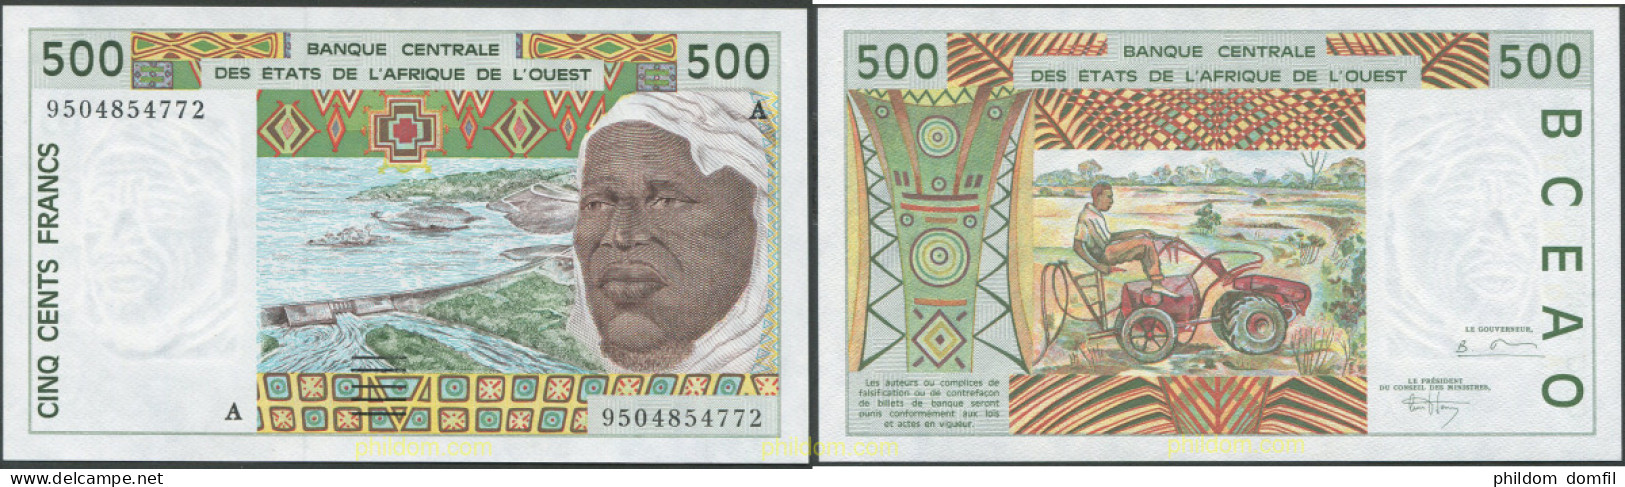 8090 COSTA DE MARFIL 1995 COTE D'IVOIRE WEST AFRICAN STATES 500 FRANCS 1995 A IVORY COAST SIGNATURE 27 - Elfenbeinküste (Côte D'Ivoire)